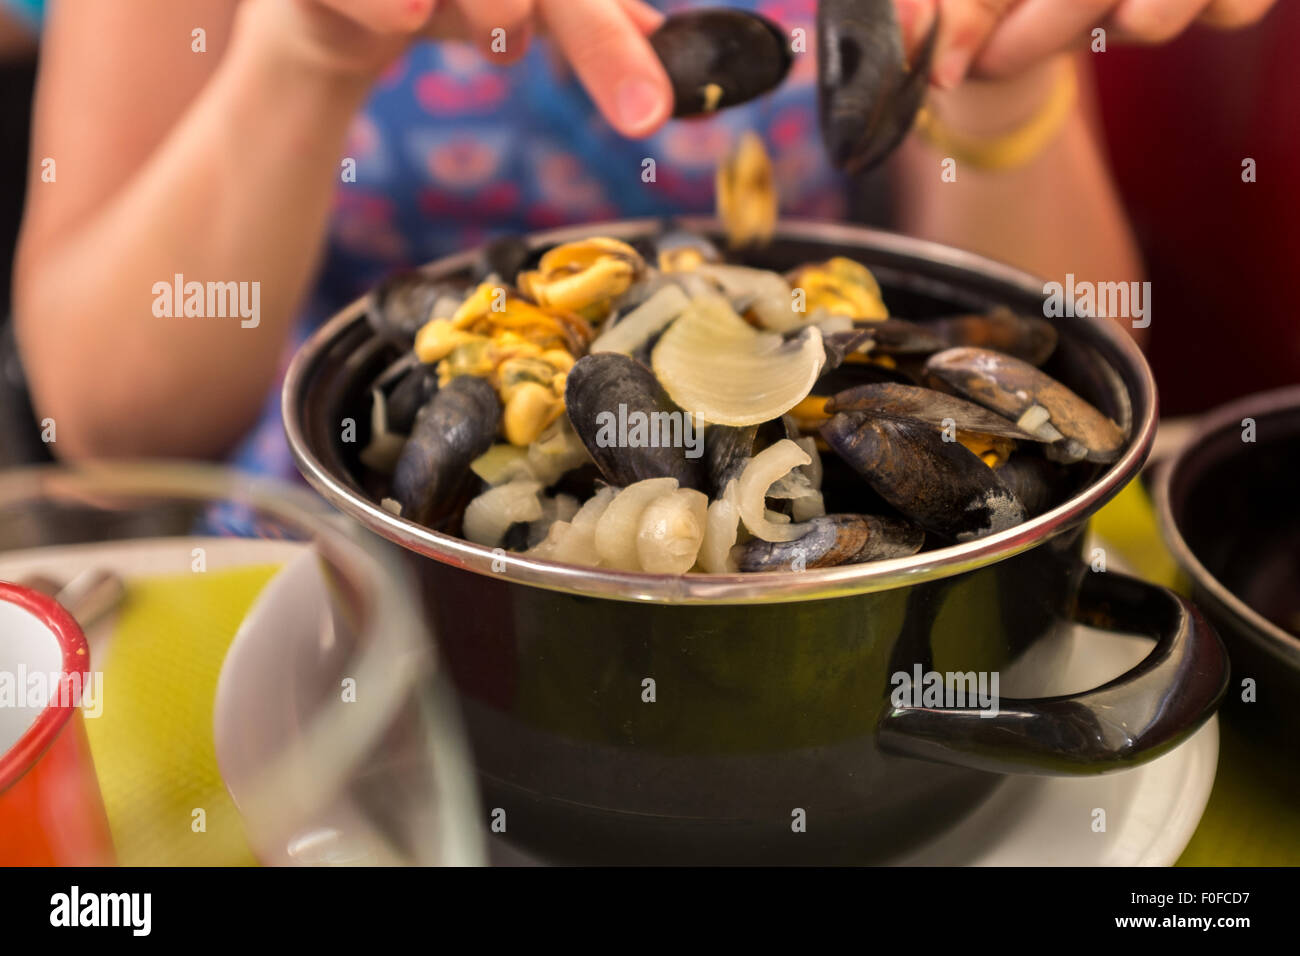 Femme mangeant un bol de moules frites moules avec coquilles vides en vacances en France. Banque D'Images